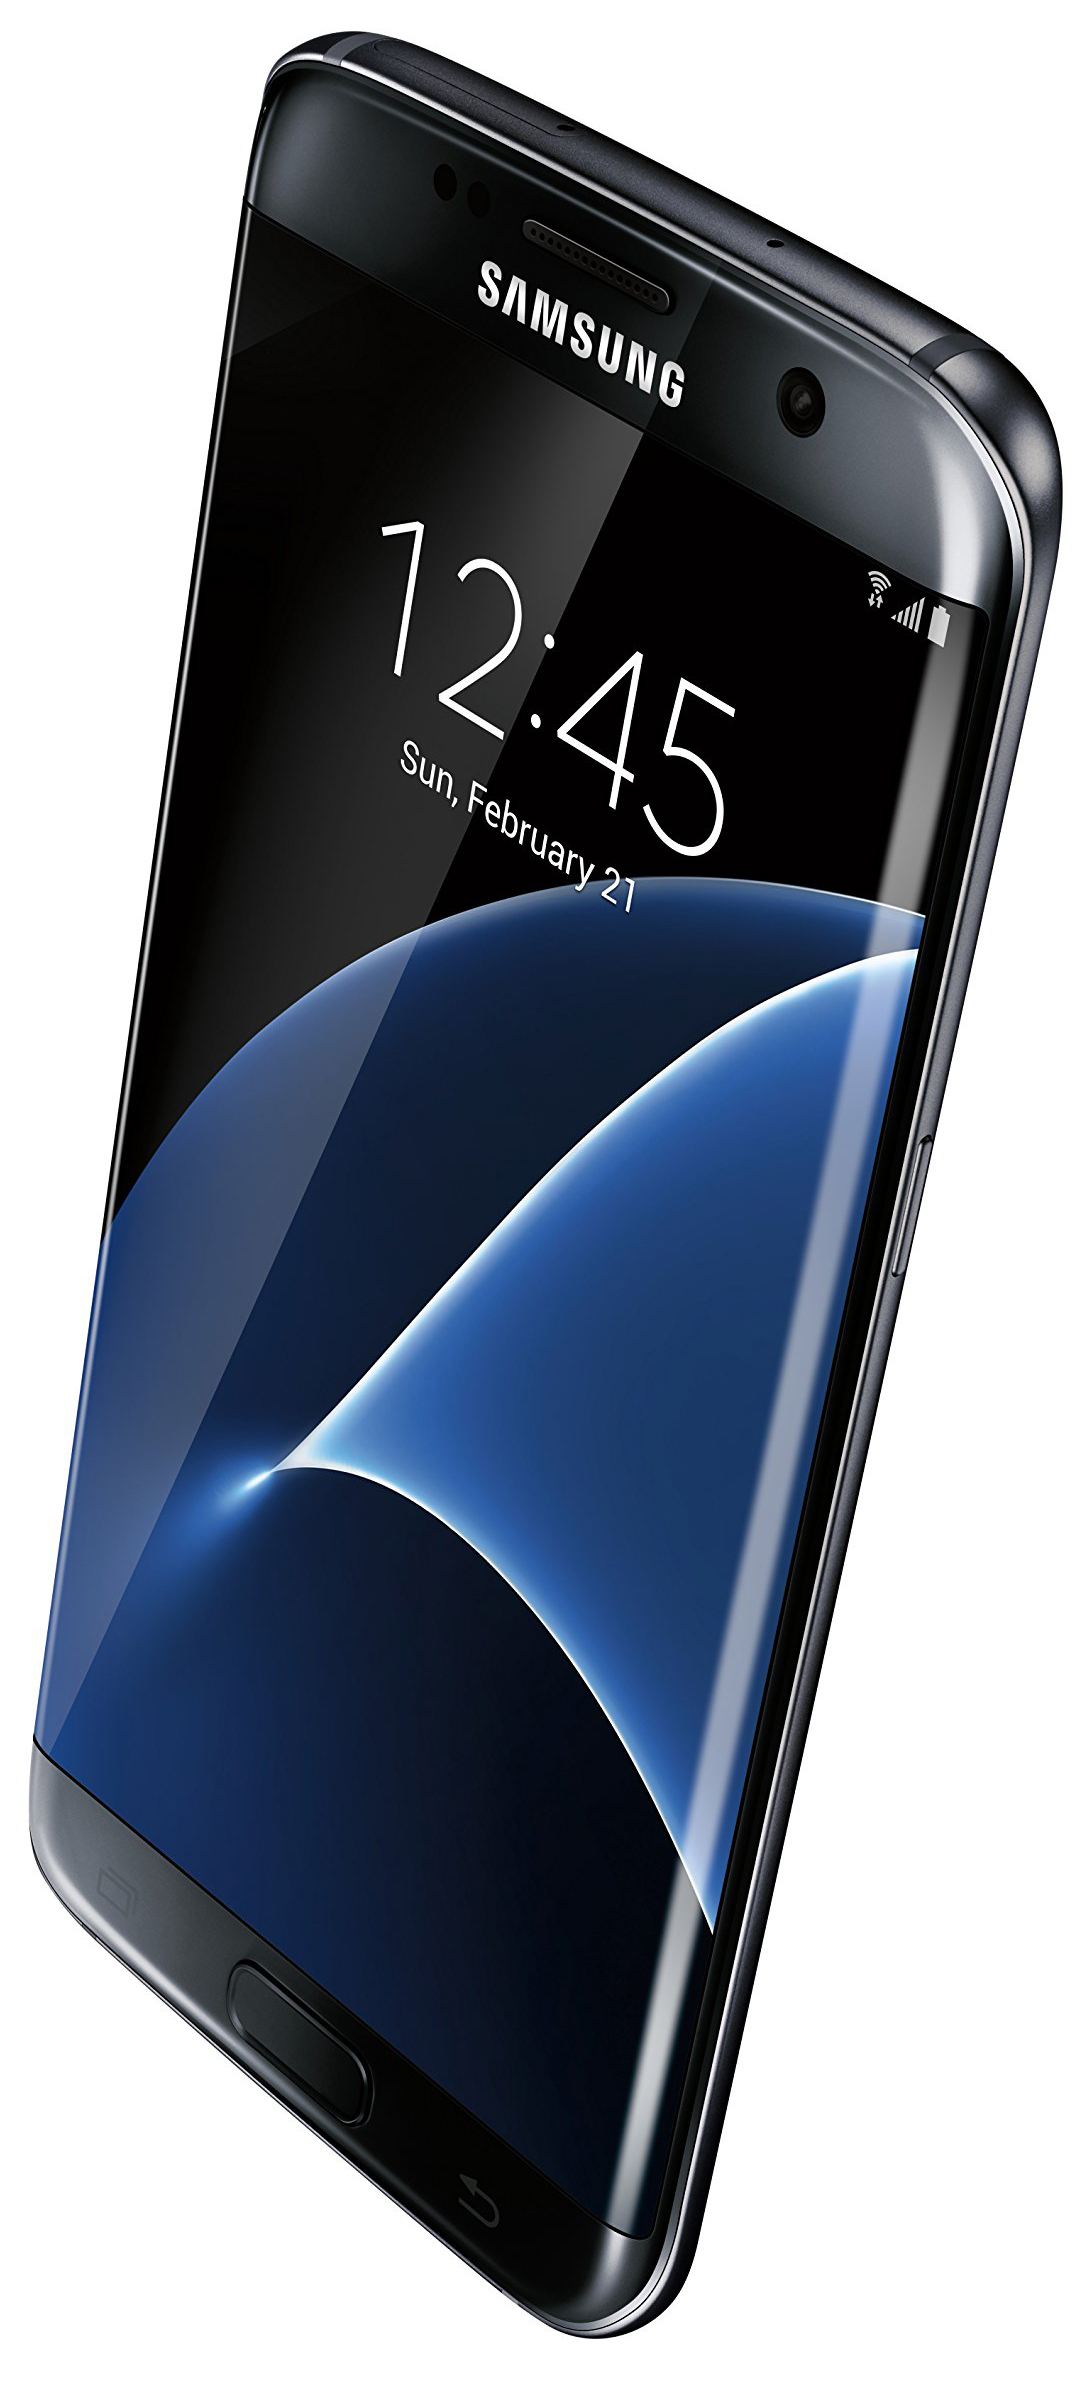 Samsung Galaxy S7 Edge màu đen có vẻ ngoài bóng bẩy và đẳng cấp, chiếc điện thoại này sẽ khiến bạn cảm thấy rất hứng thú. Hãy ngắm nhìn nó để cảm nhận được sự cống hiến và chất lượng đích thực của Samsung.